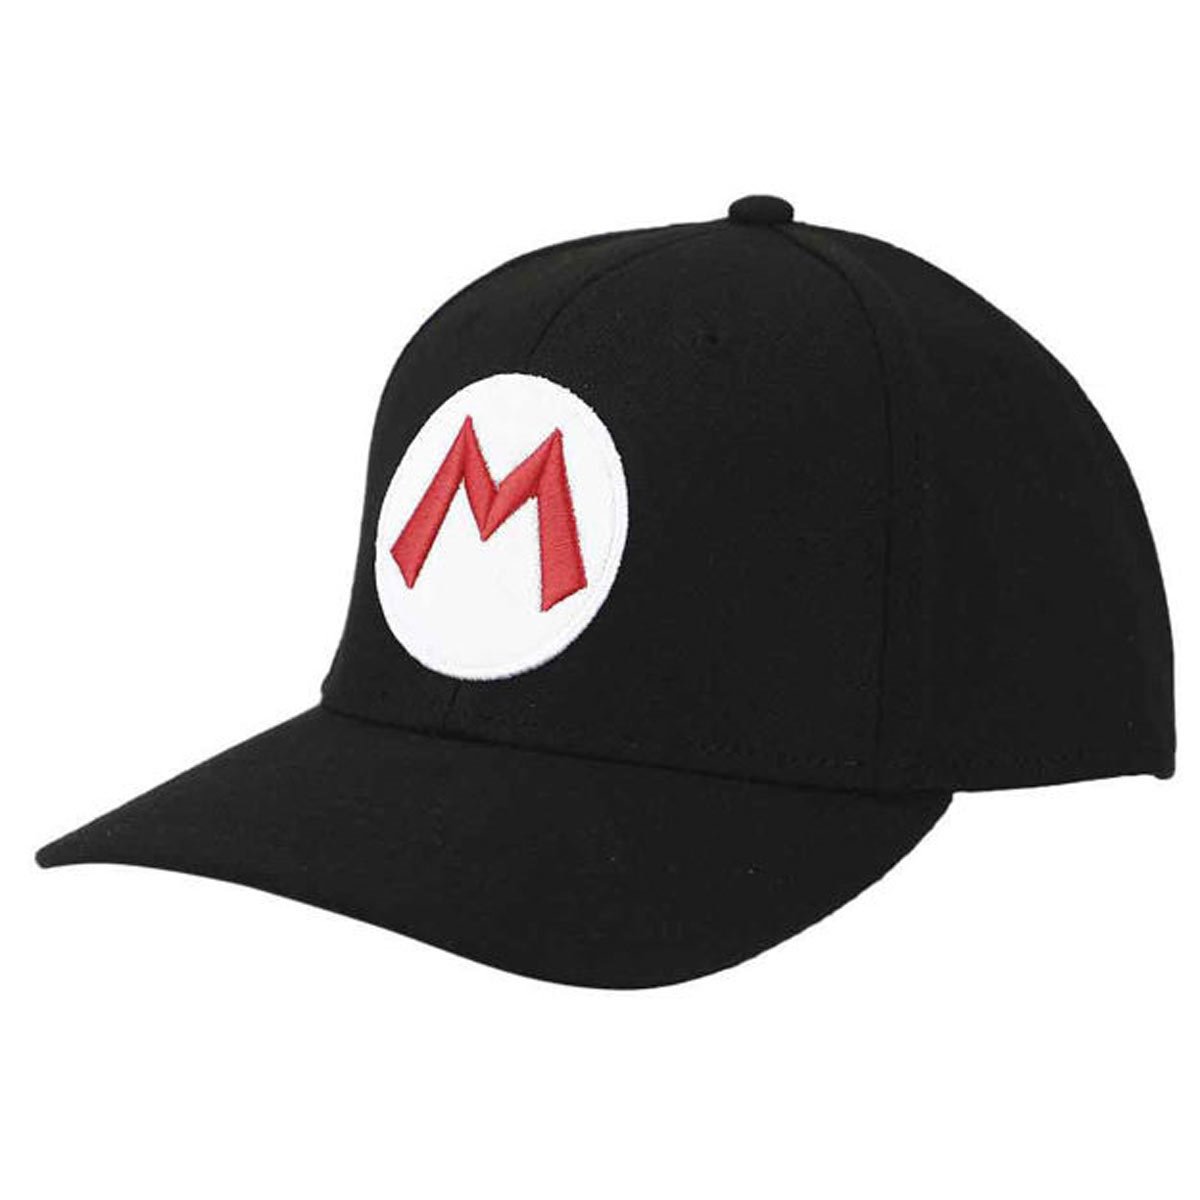 mario hat m logo